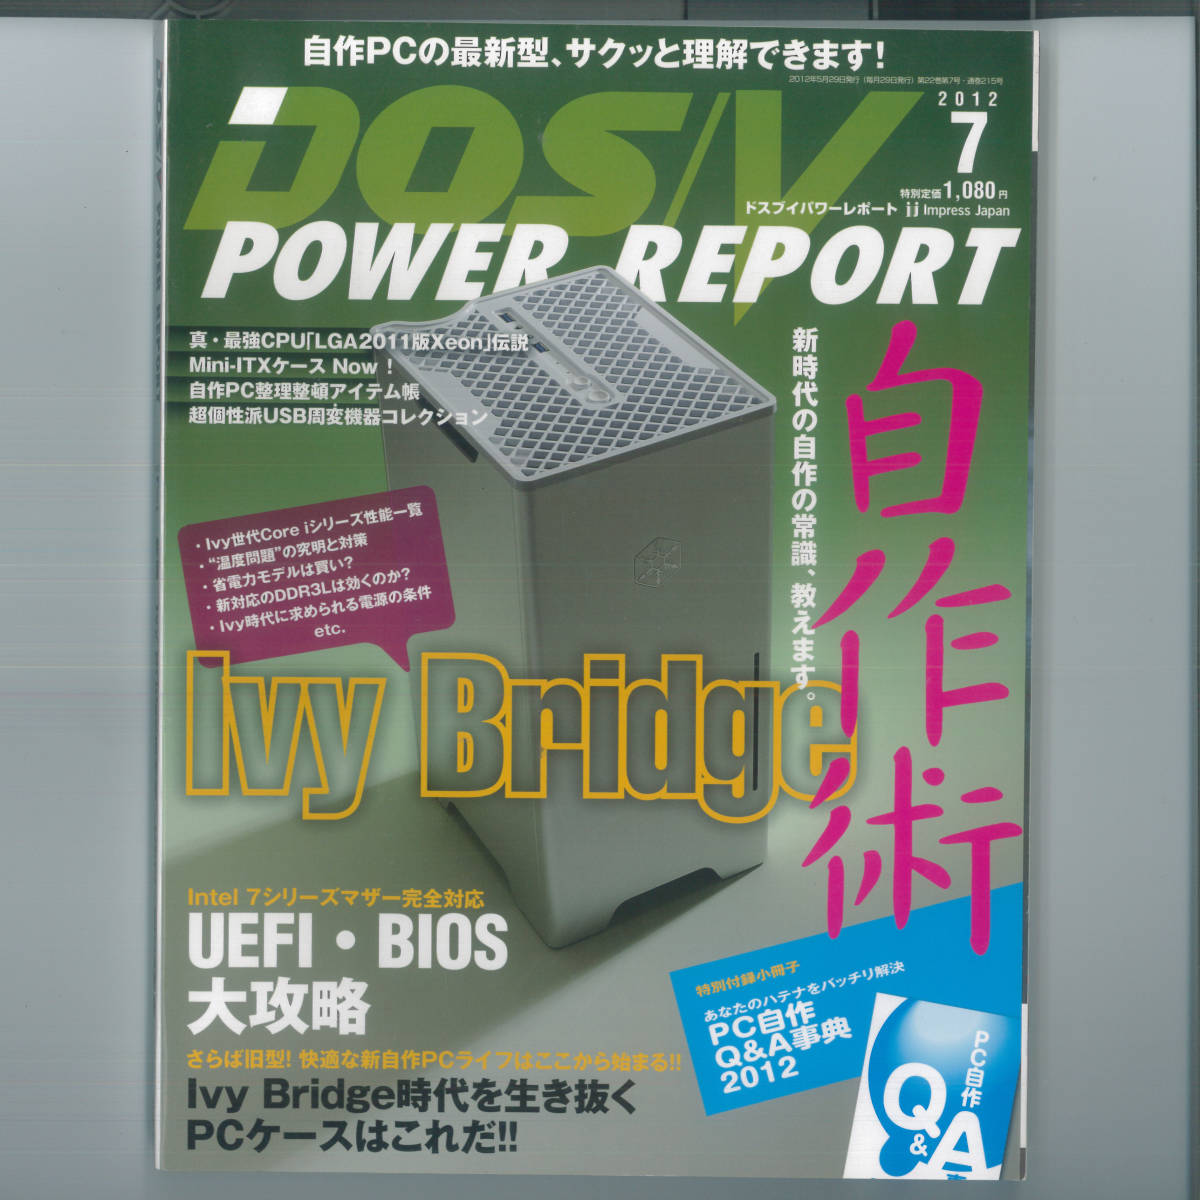 kk DOS/V POWER REPORT (dosbi энергия отчет ) 2012 год 07 месяц номер [ журнал ]